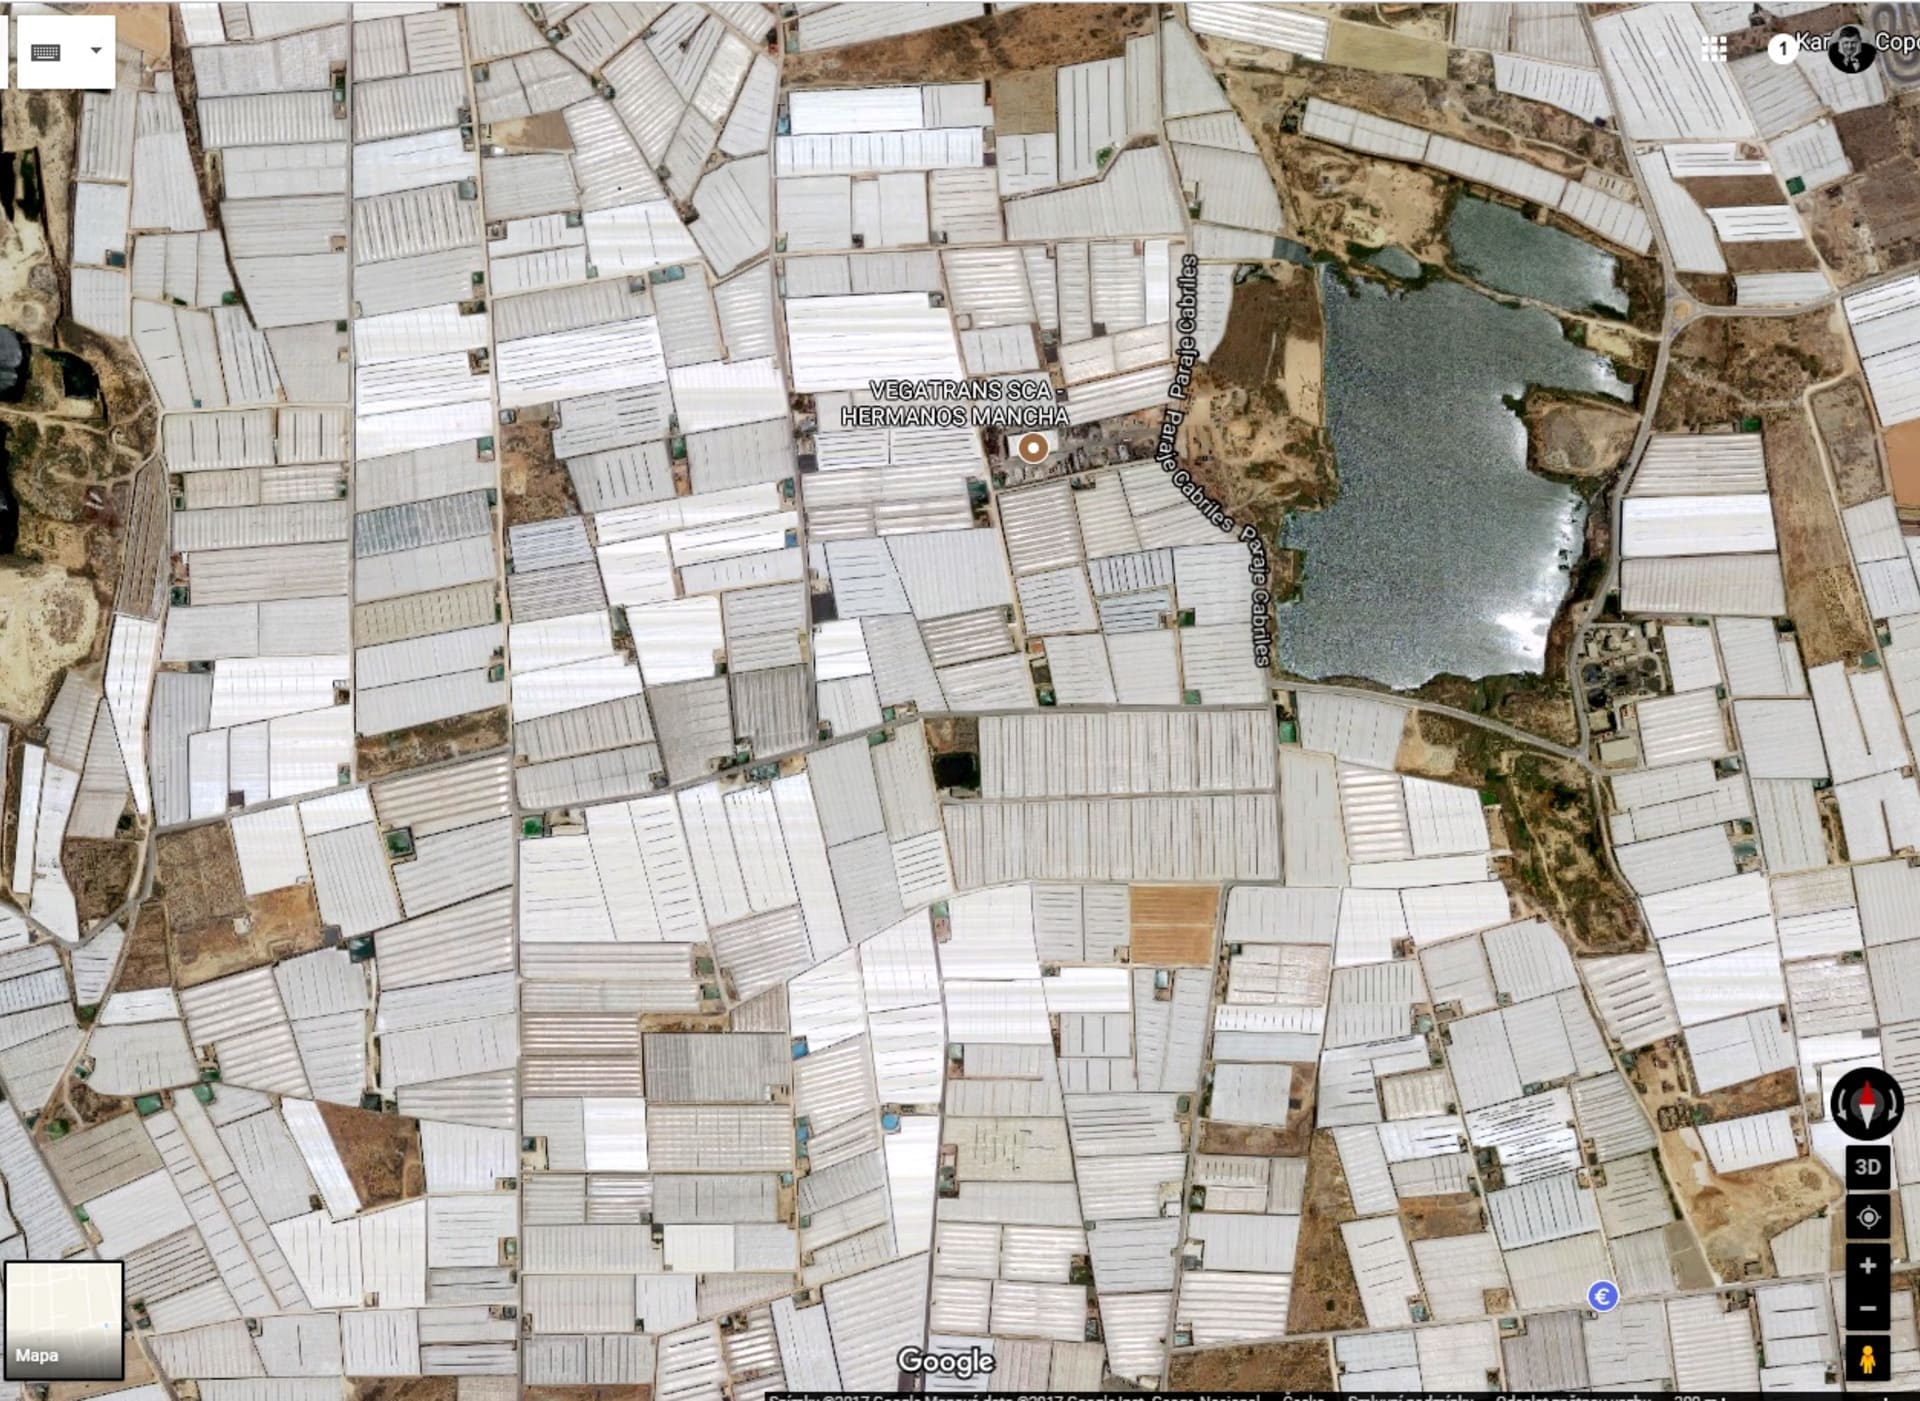 Foliovníkové pole ve Španělsku na google maps